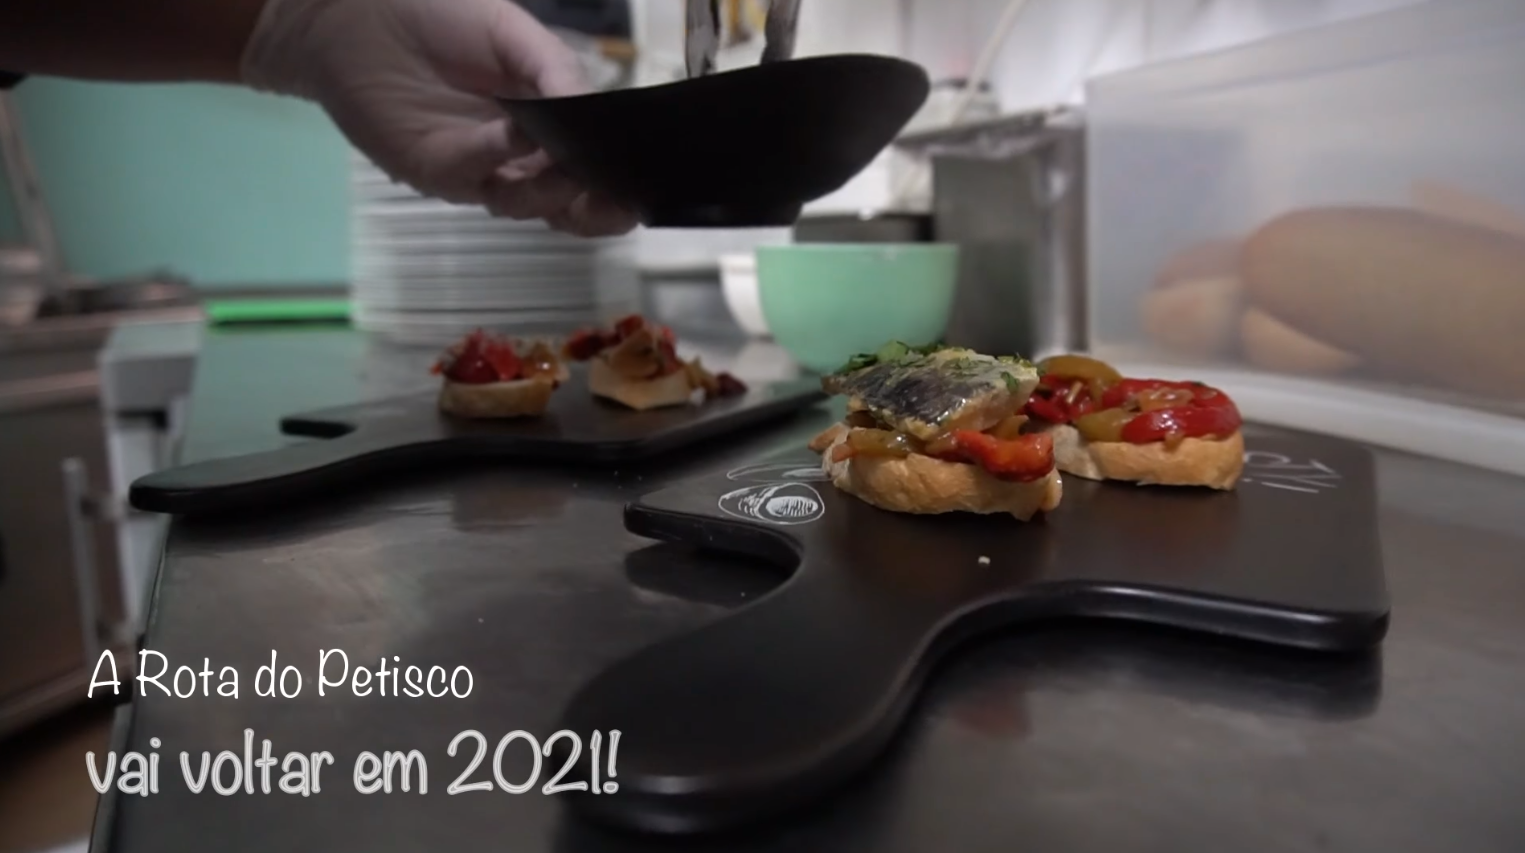 Aljezur promove "Rota do Petisco 2021" com vídeo especial